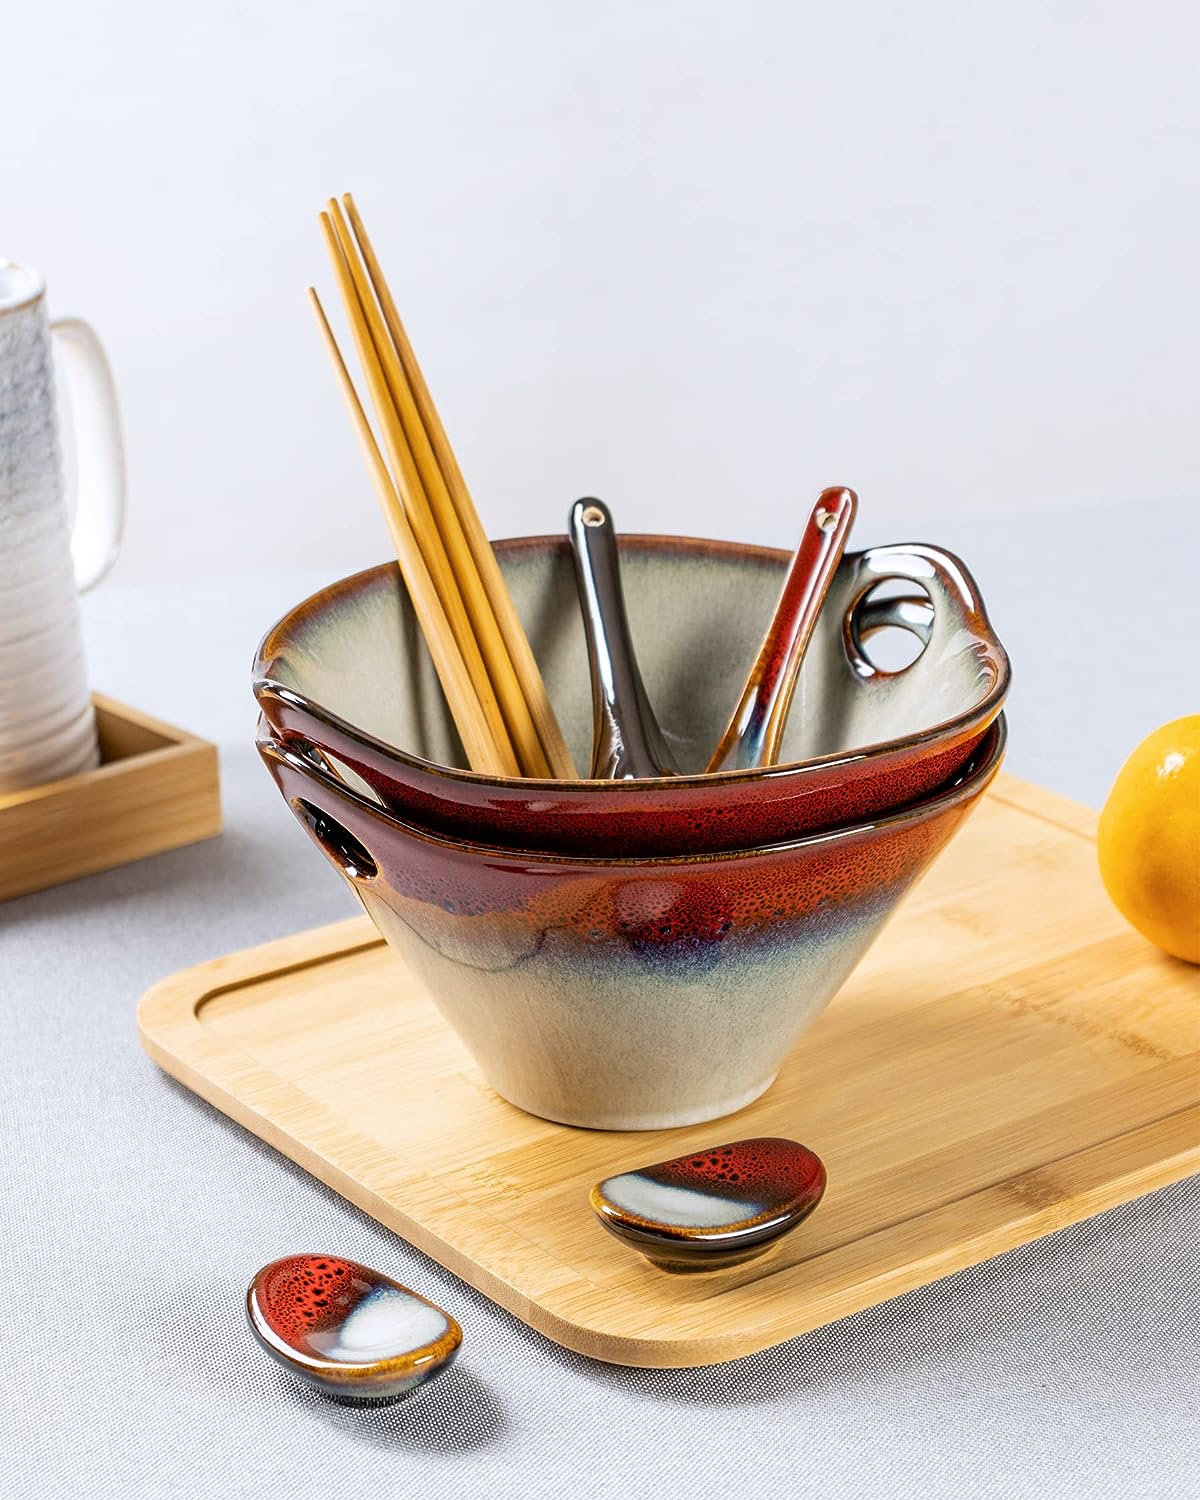 https://assets.wfcdn.com/im/60298343/compr-r85/2540/254055723/japanese-ramen-noodle-bowl-set-of-2-30-oz-large-porcelain-salad-bowl-with-chopsticks-soup-spoons-and-rests-kitchen-serving-dishes-for-pho-udon-reactive-red.jpg